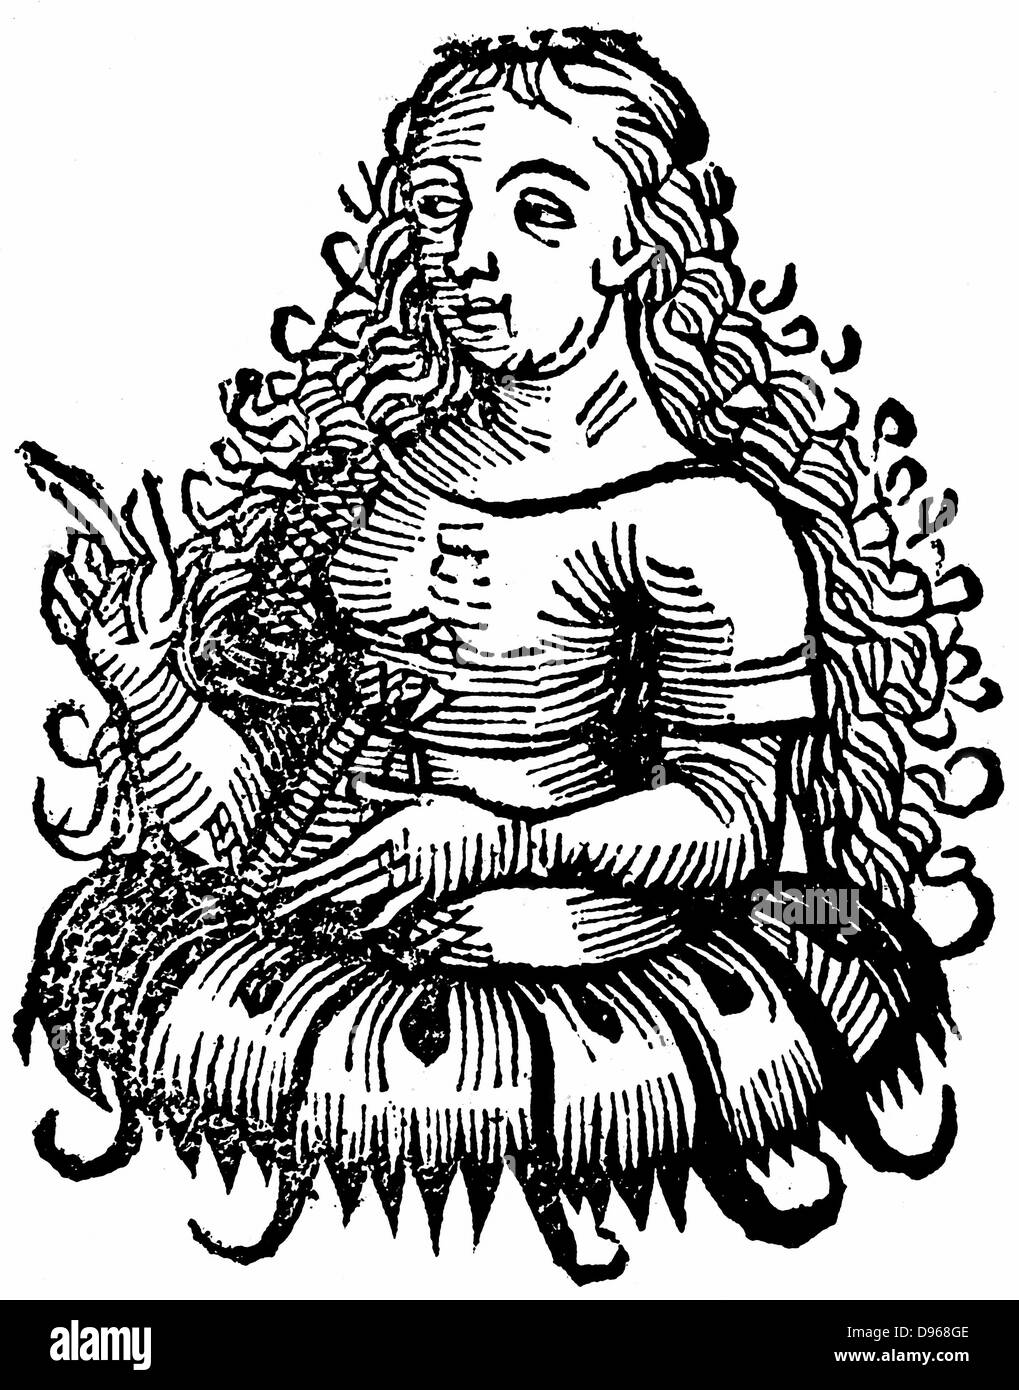 Sibyl cimmérien : de Hartmann Schedel 'Liber Chronicarum mundi' (Chronique de Nuremberg Nuremberg 1493). Gravure sur bois Banque D'Images